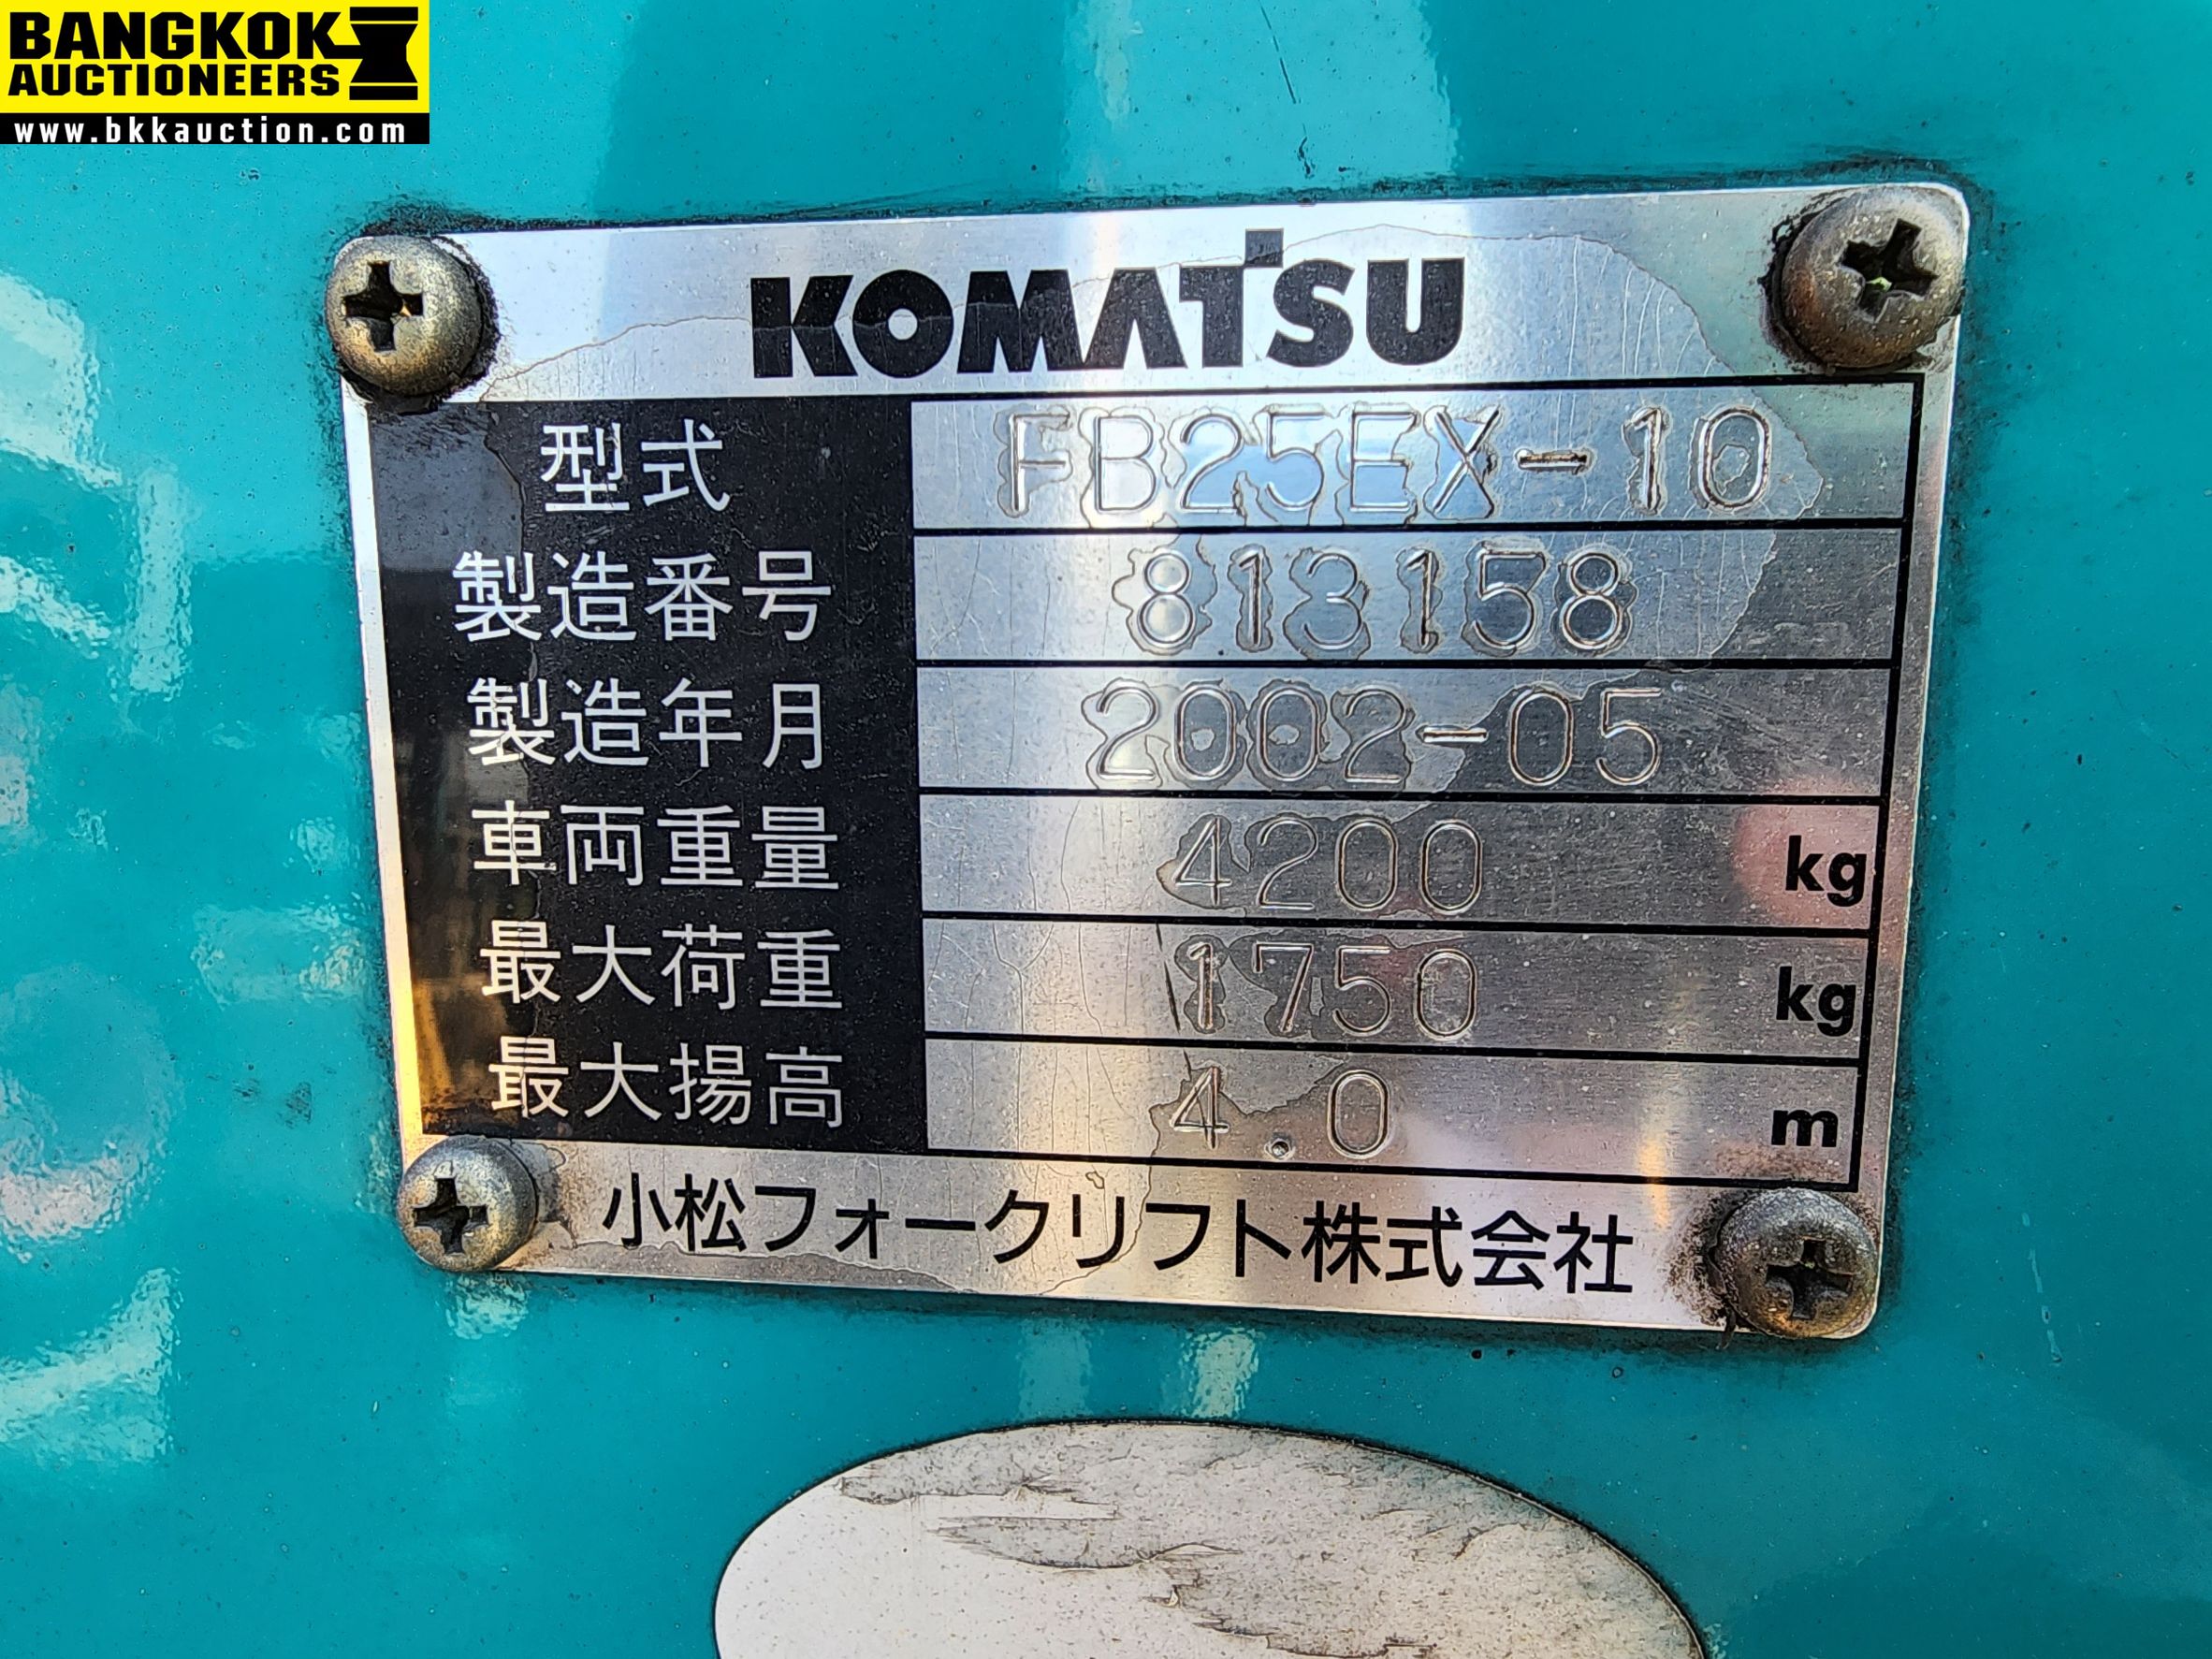 รถยก KOMATSU-FB25EX-10-813158